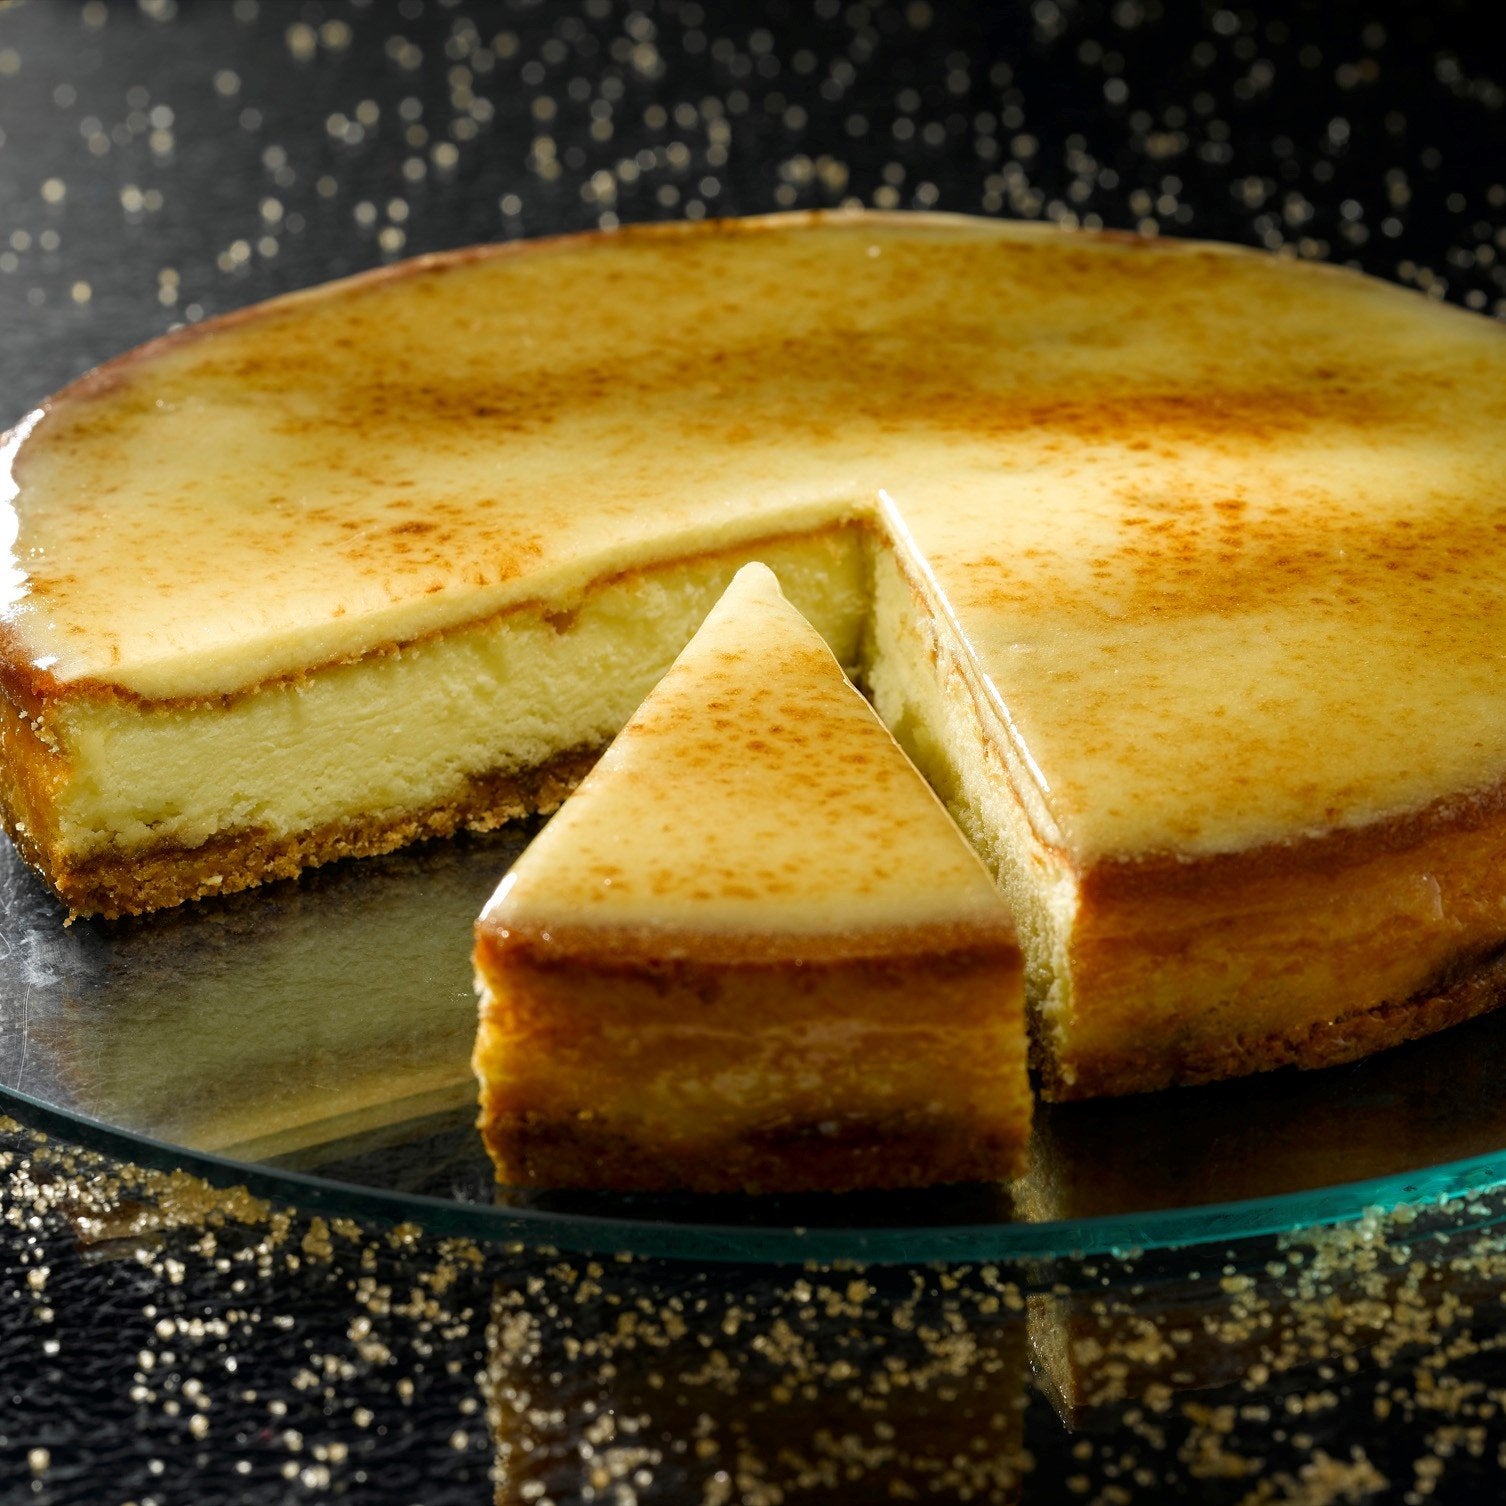 La Cheesecake Brulée Bindi presenta una base di croccante biscotto, crema di ricotta e mascarpone con salsa al caramello, ricoperta di gustosa crema brulèe.